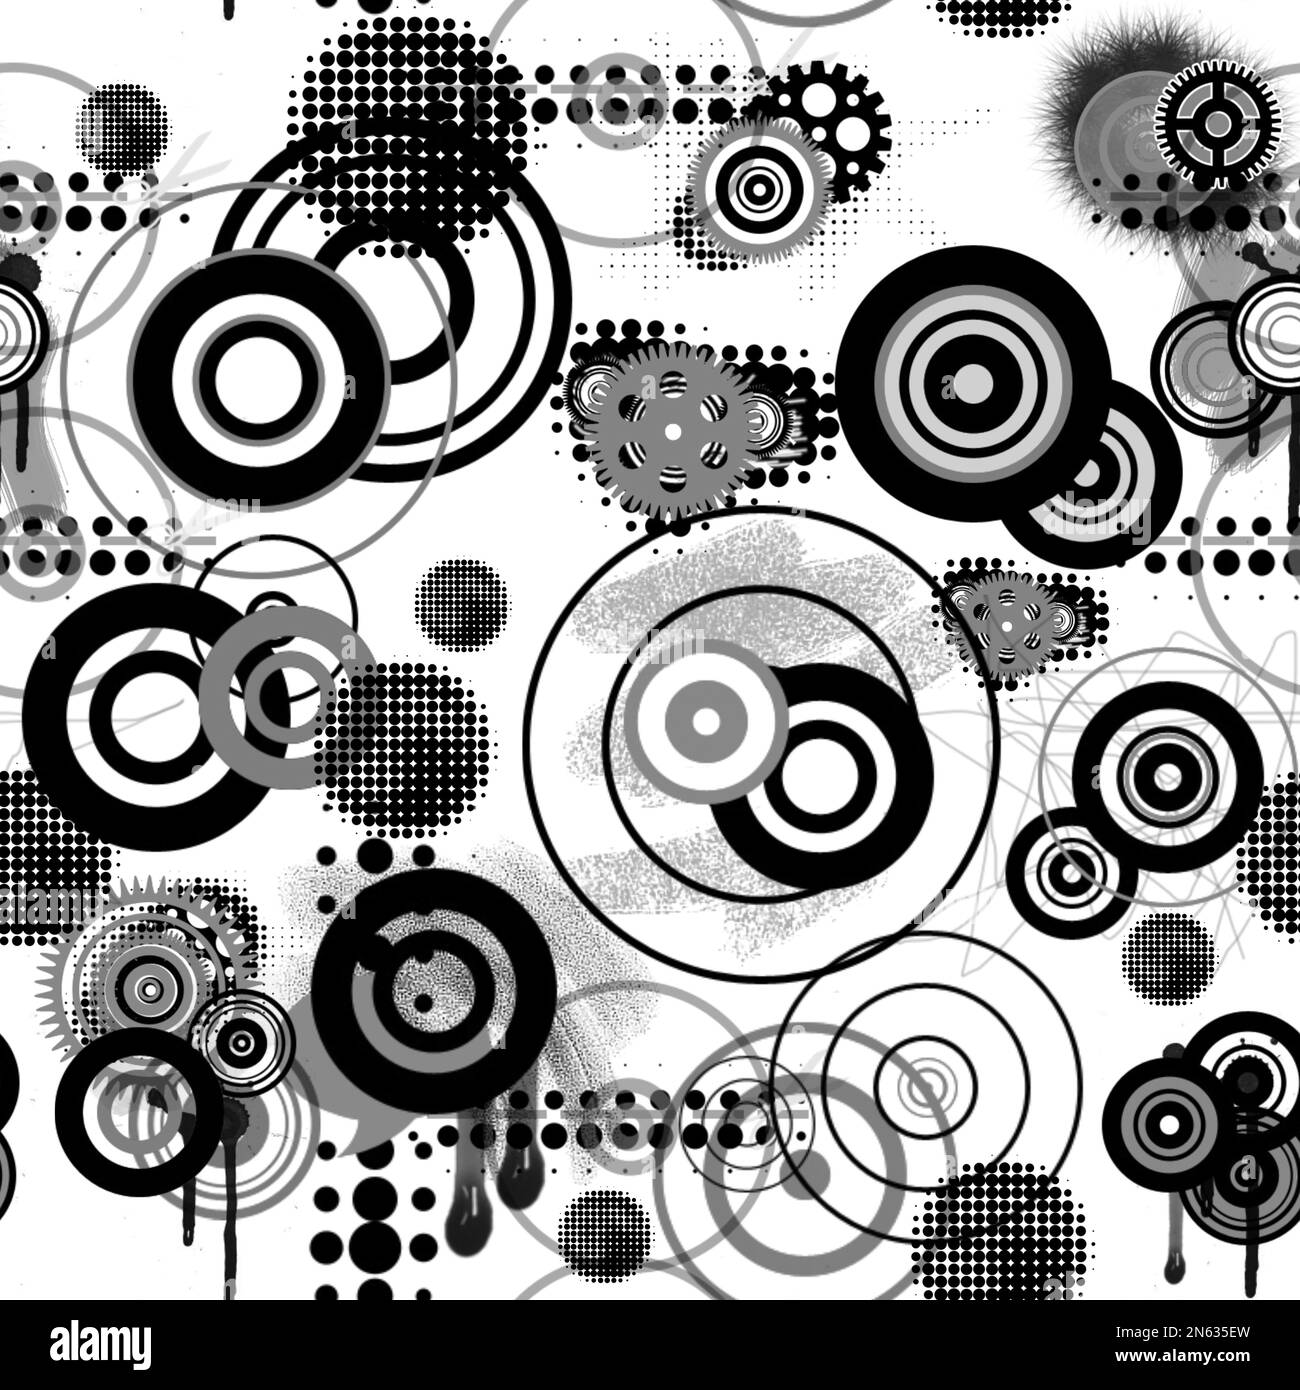 Círculos geométricos abstractos en blanco y negro Foto de stock